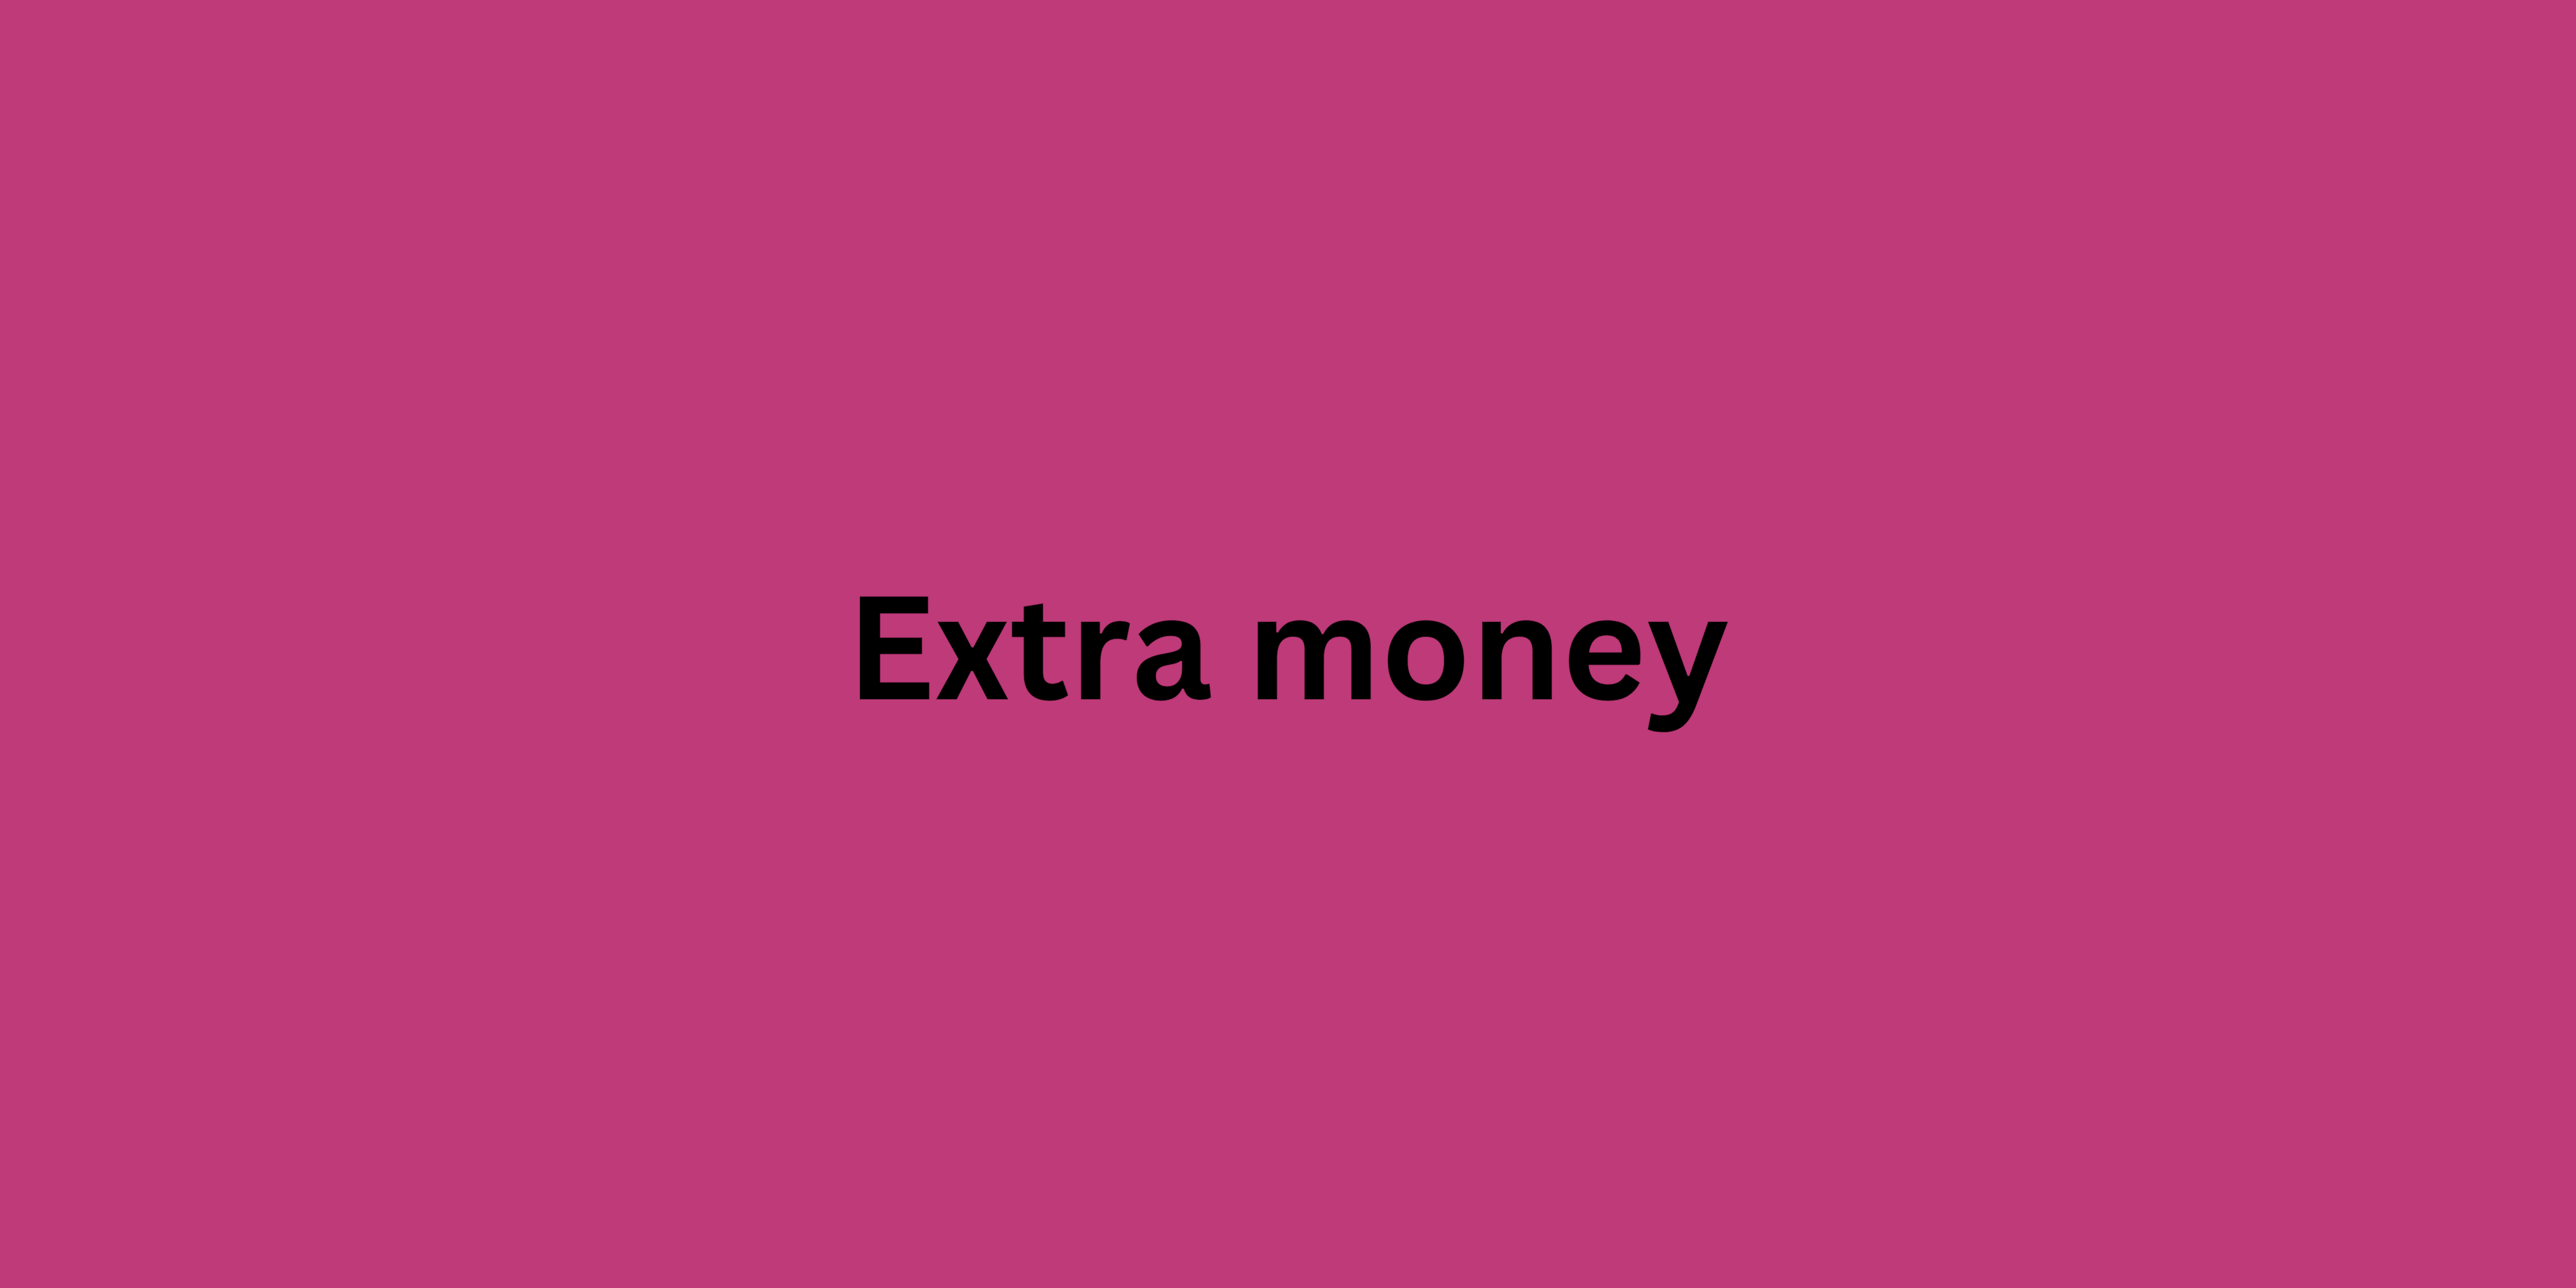 Extra money: